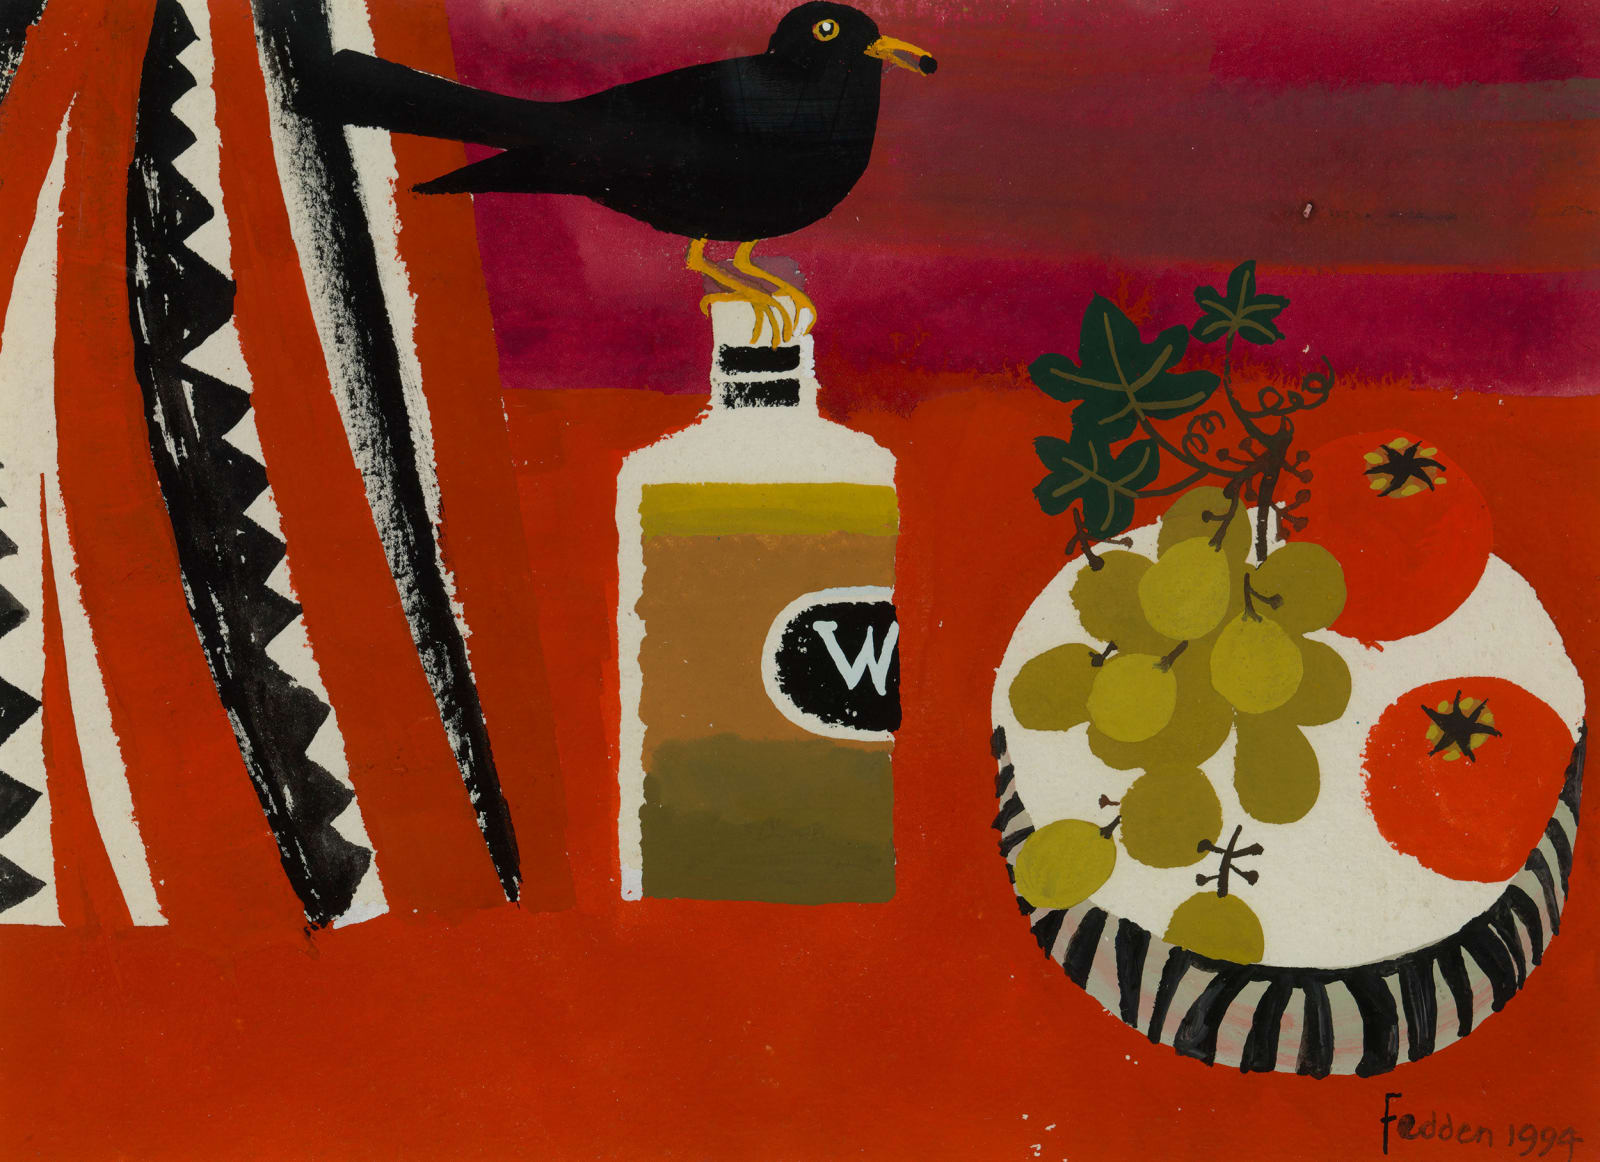 Mary Fedden, Blackbird, bottle and bowl of fruit, 1994